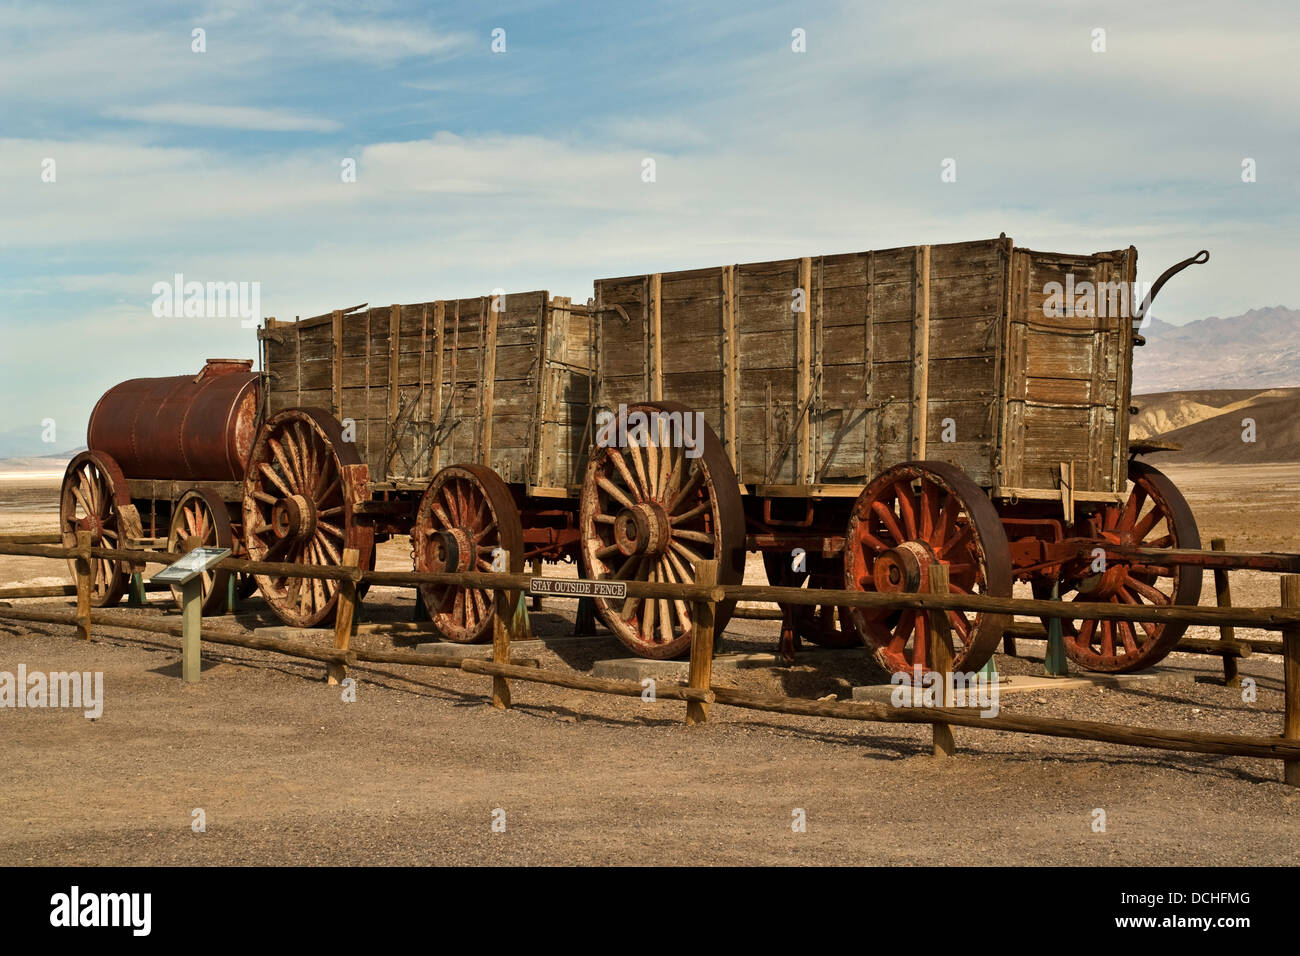 Zwanzig Mule Team Wagen, Harmony Borax Works, Death Valley Nationalpark, Kalifornien Stockfoto